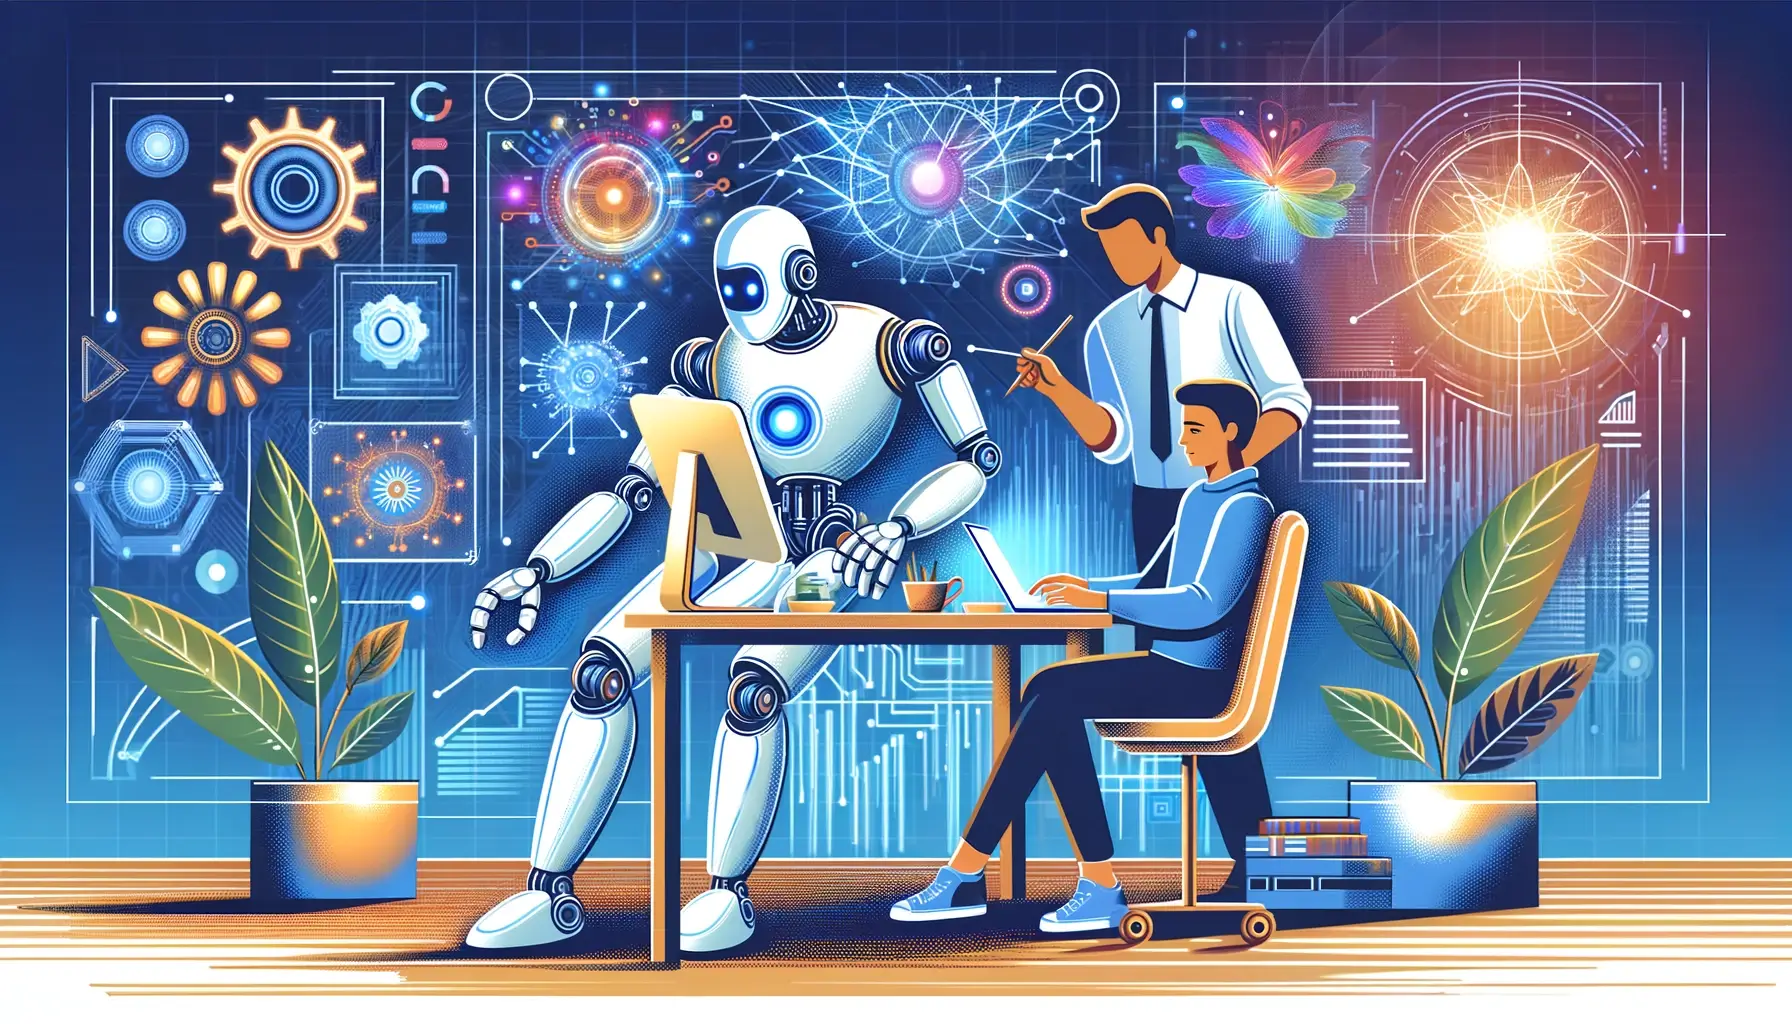 Abbildung eines humanoiden Roboters und eines Menschen, die in einem futuristischen Büro harmonisch zusammenarbeiten, umgeben von moderner Technologie